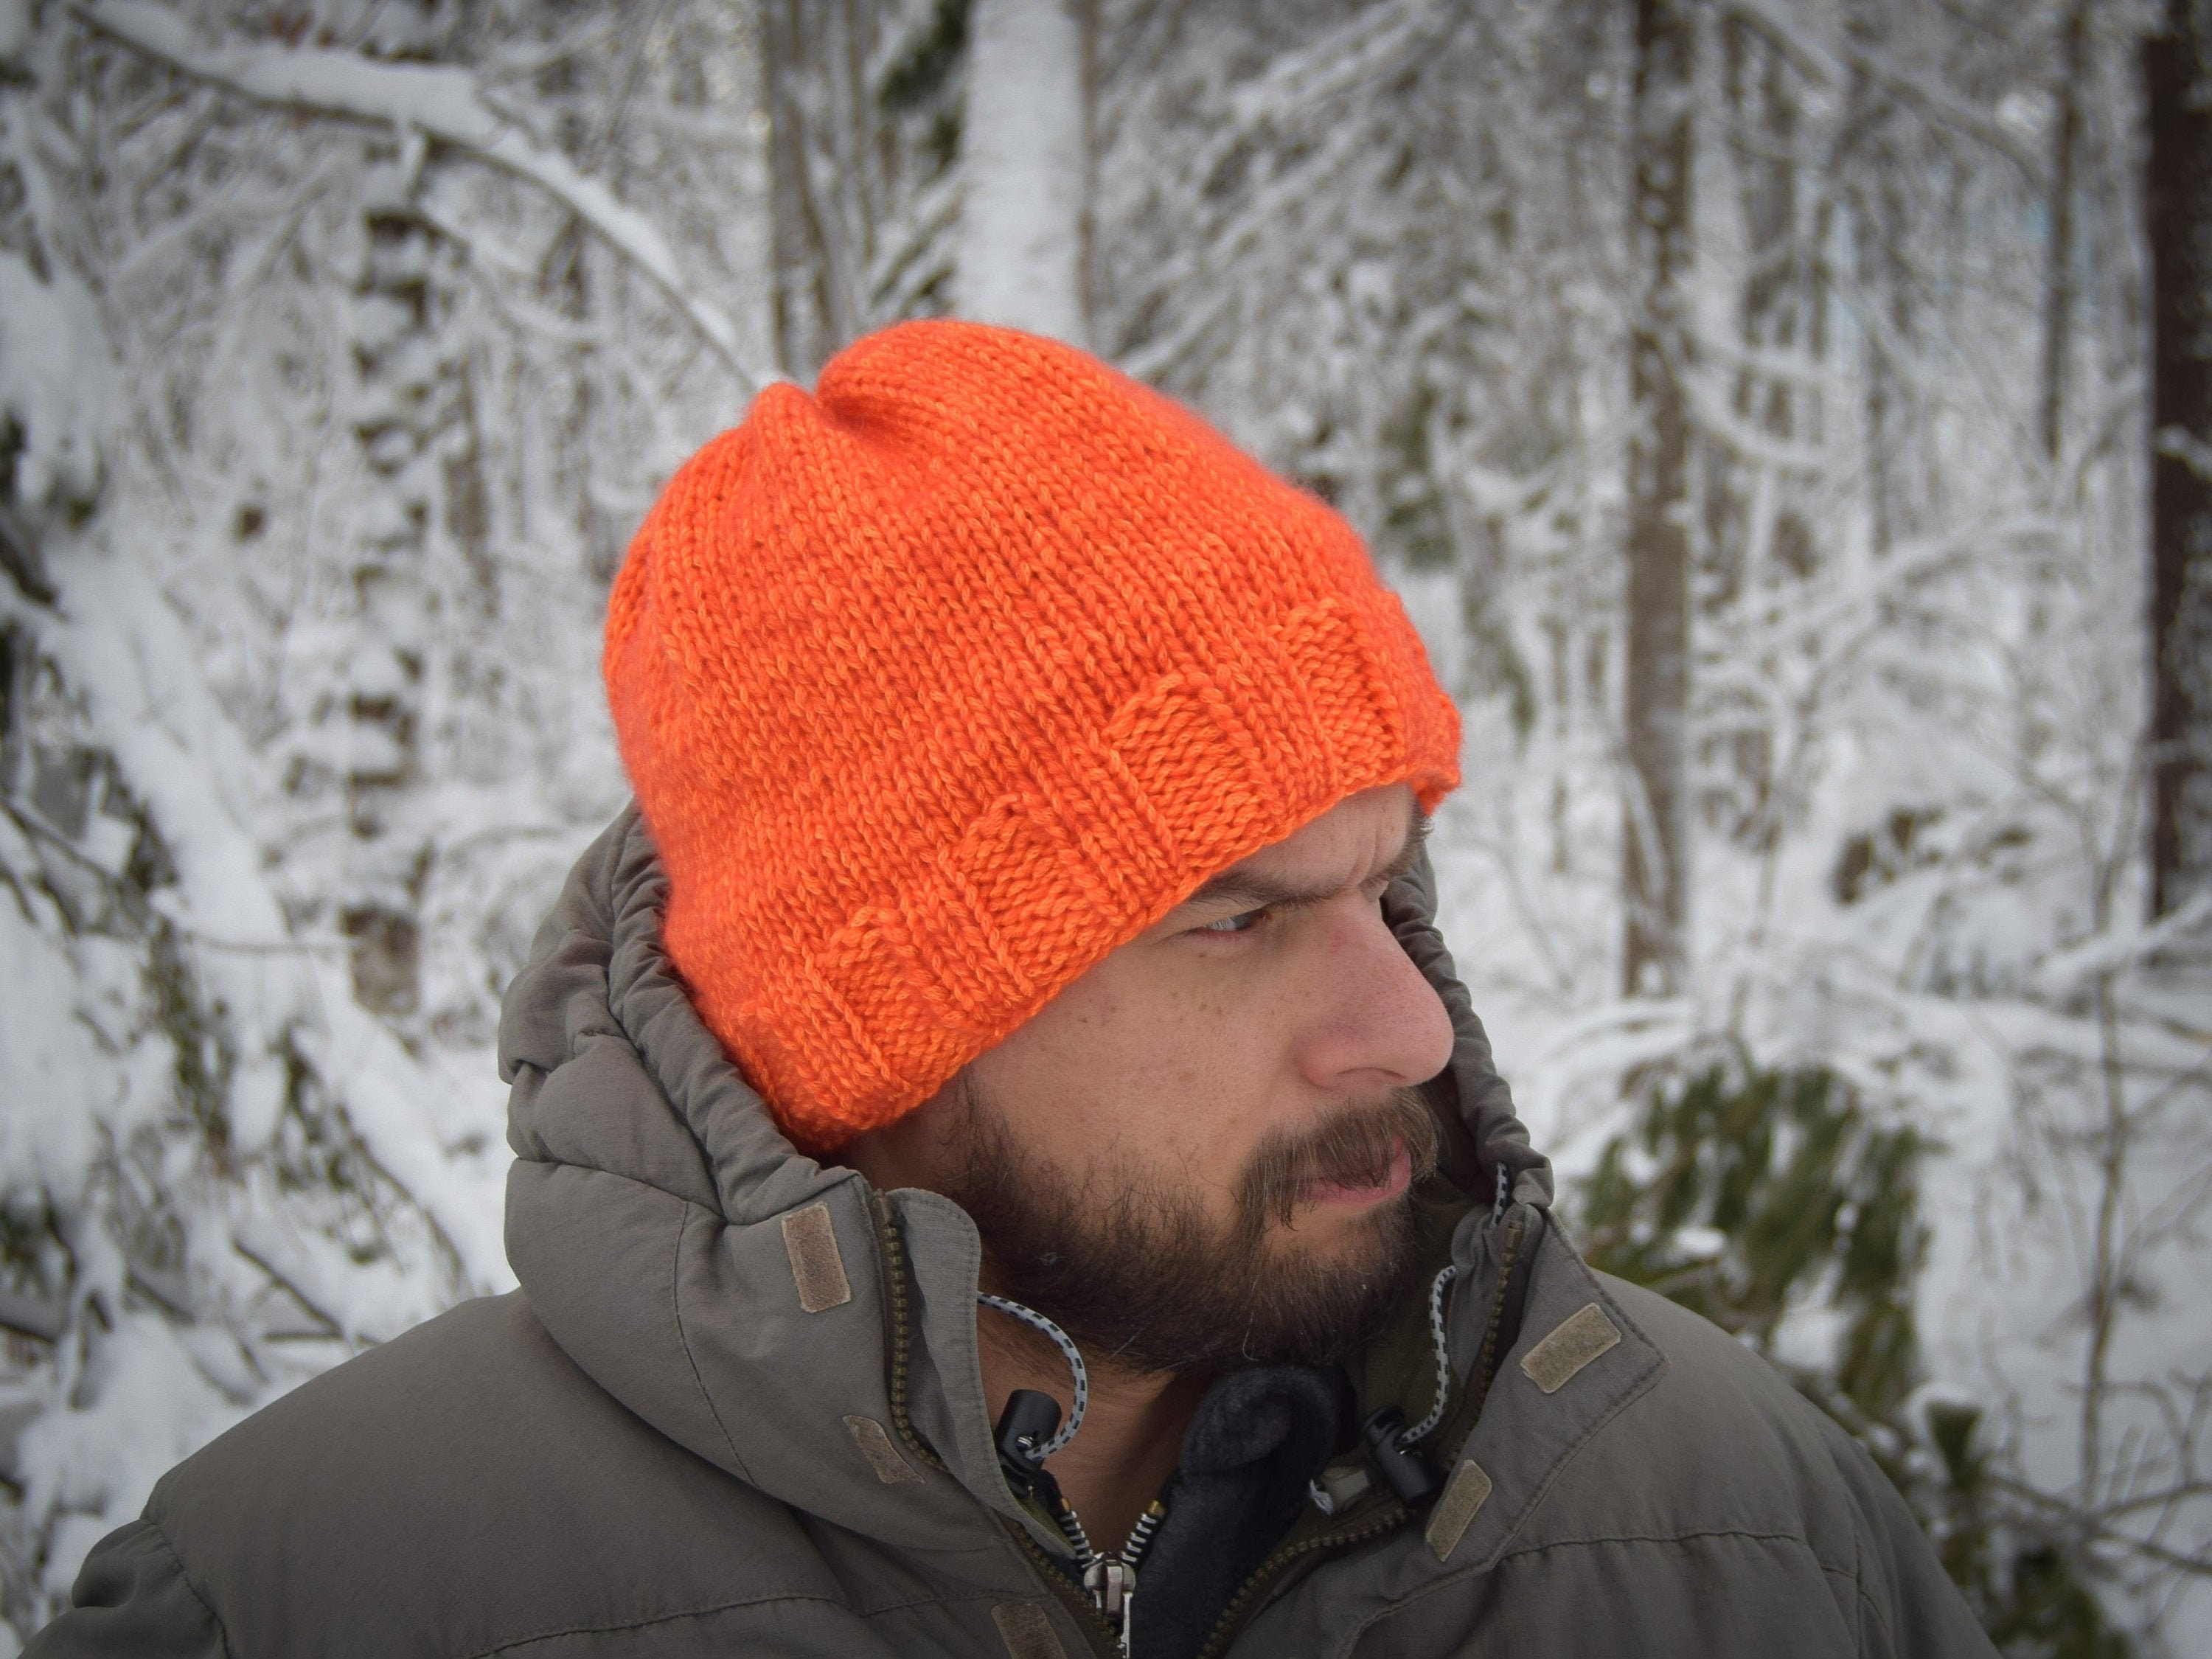 Maine 3 Season Brim-lined Blaze Blend Fleece-lined Hat Hunting Orange by Knit - Brim Mountainblaze Merino Etsy Wool Hand